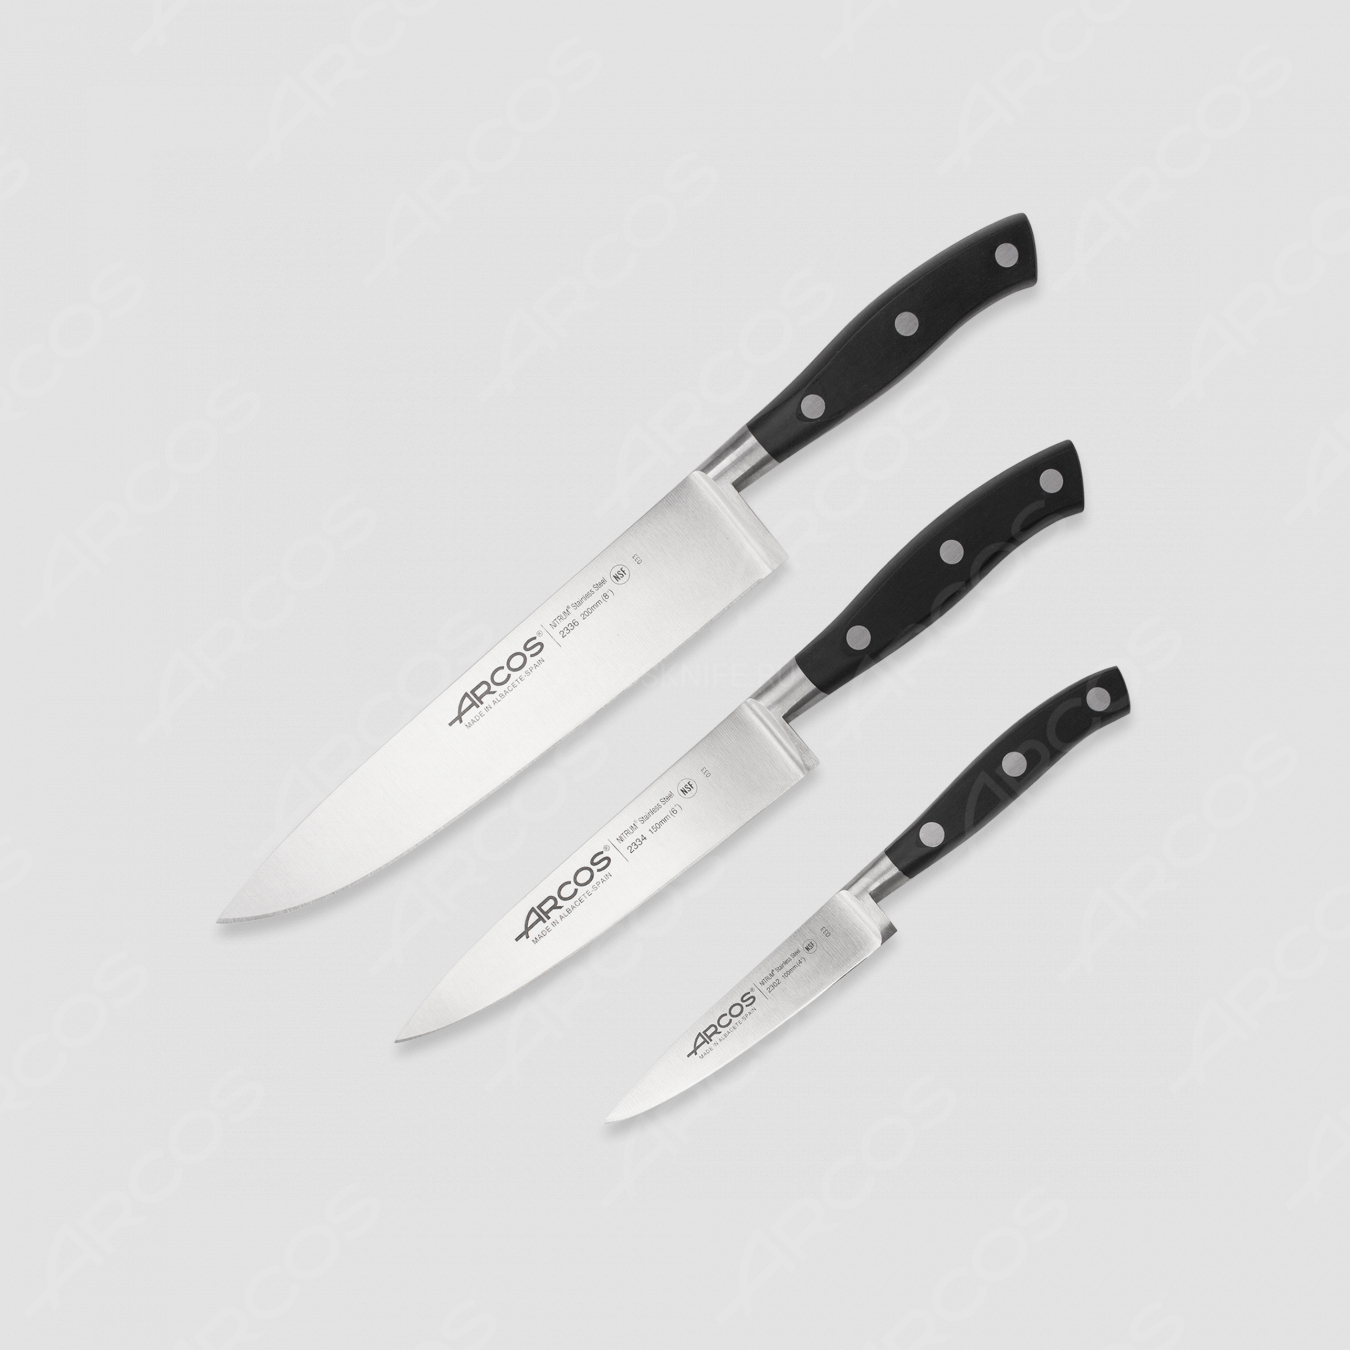 Набор кухонных ножей, 3 штуки (10 см, 15 см, 20 см), серия Riviera, ARCOS, Испания